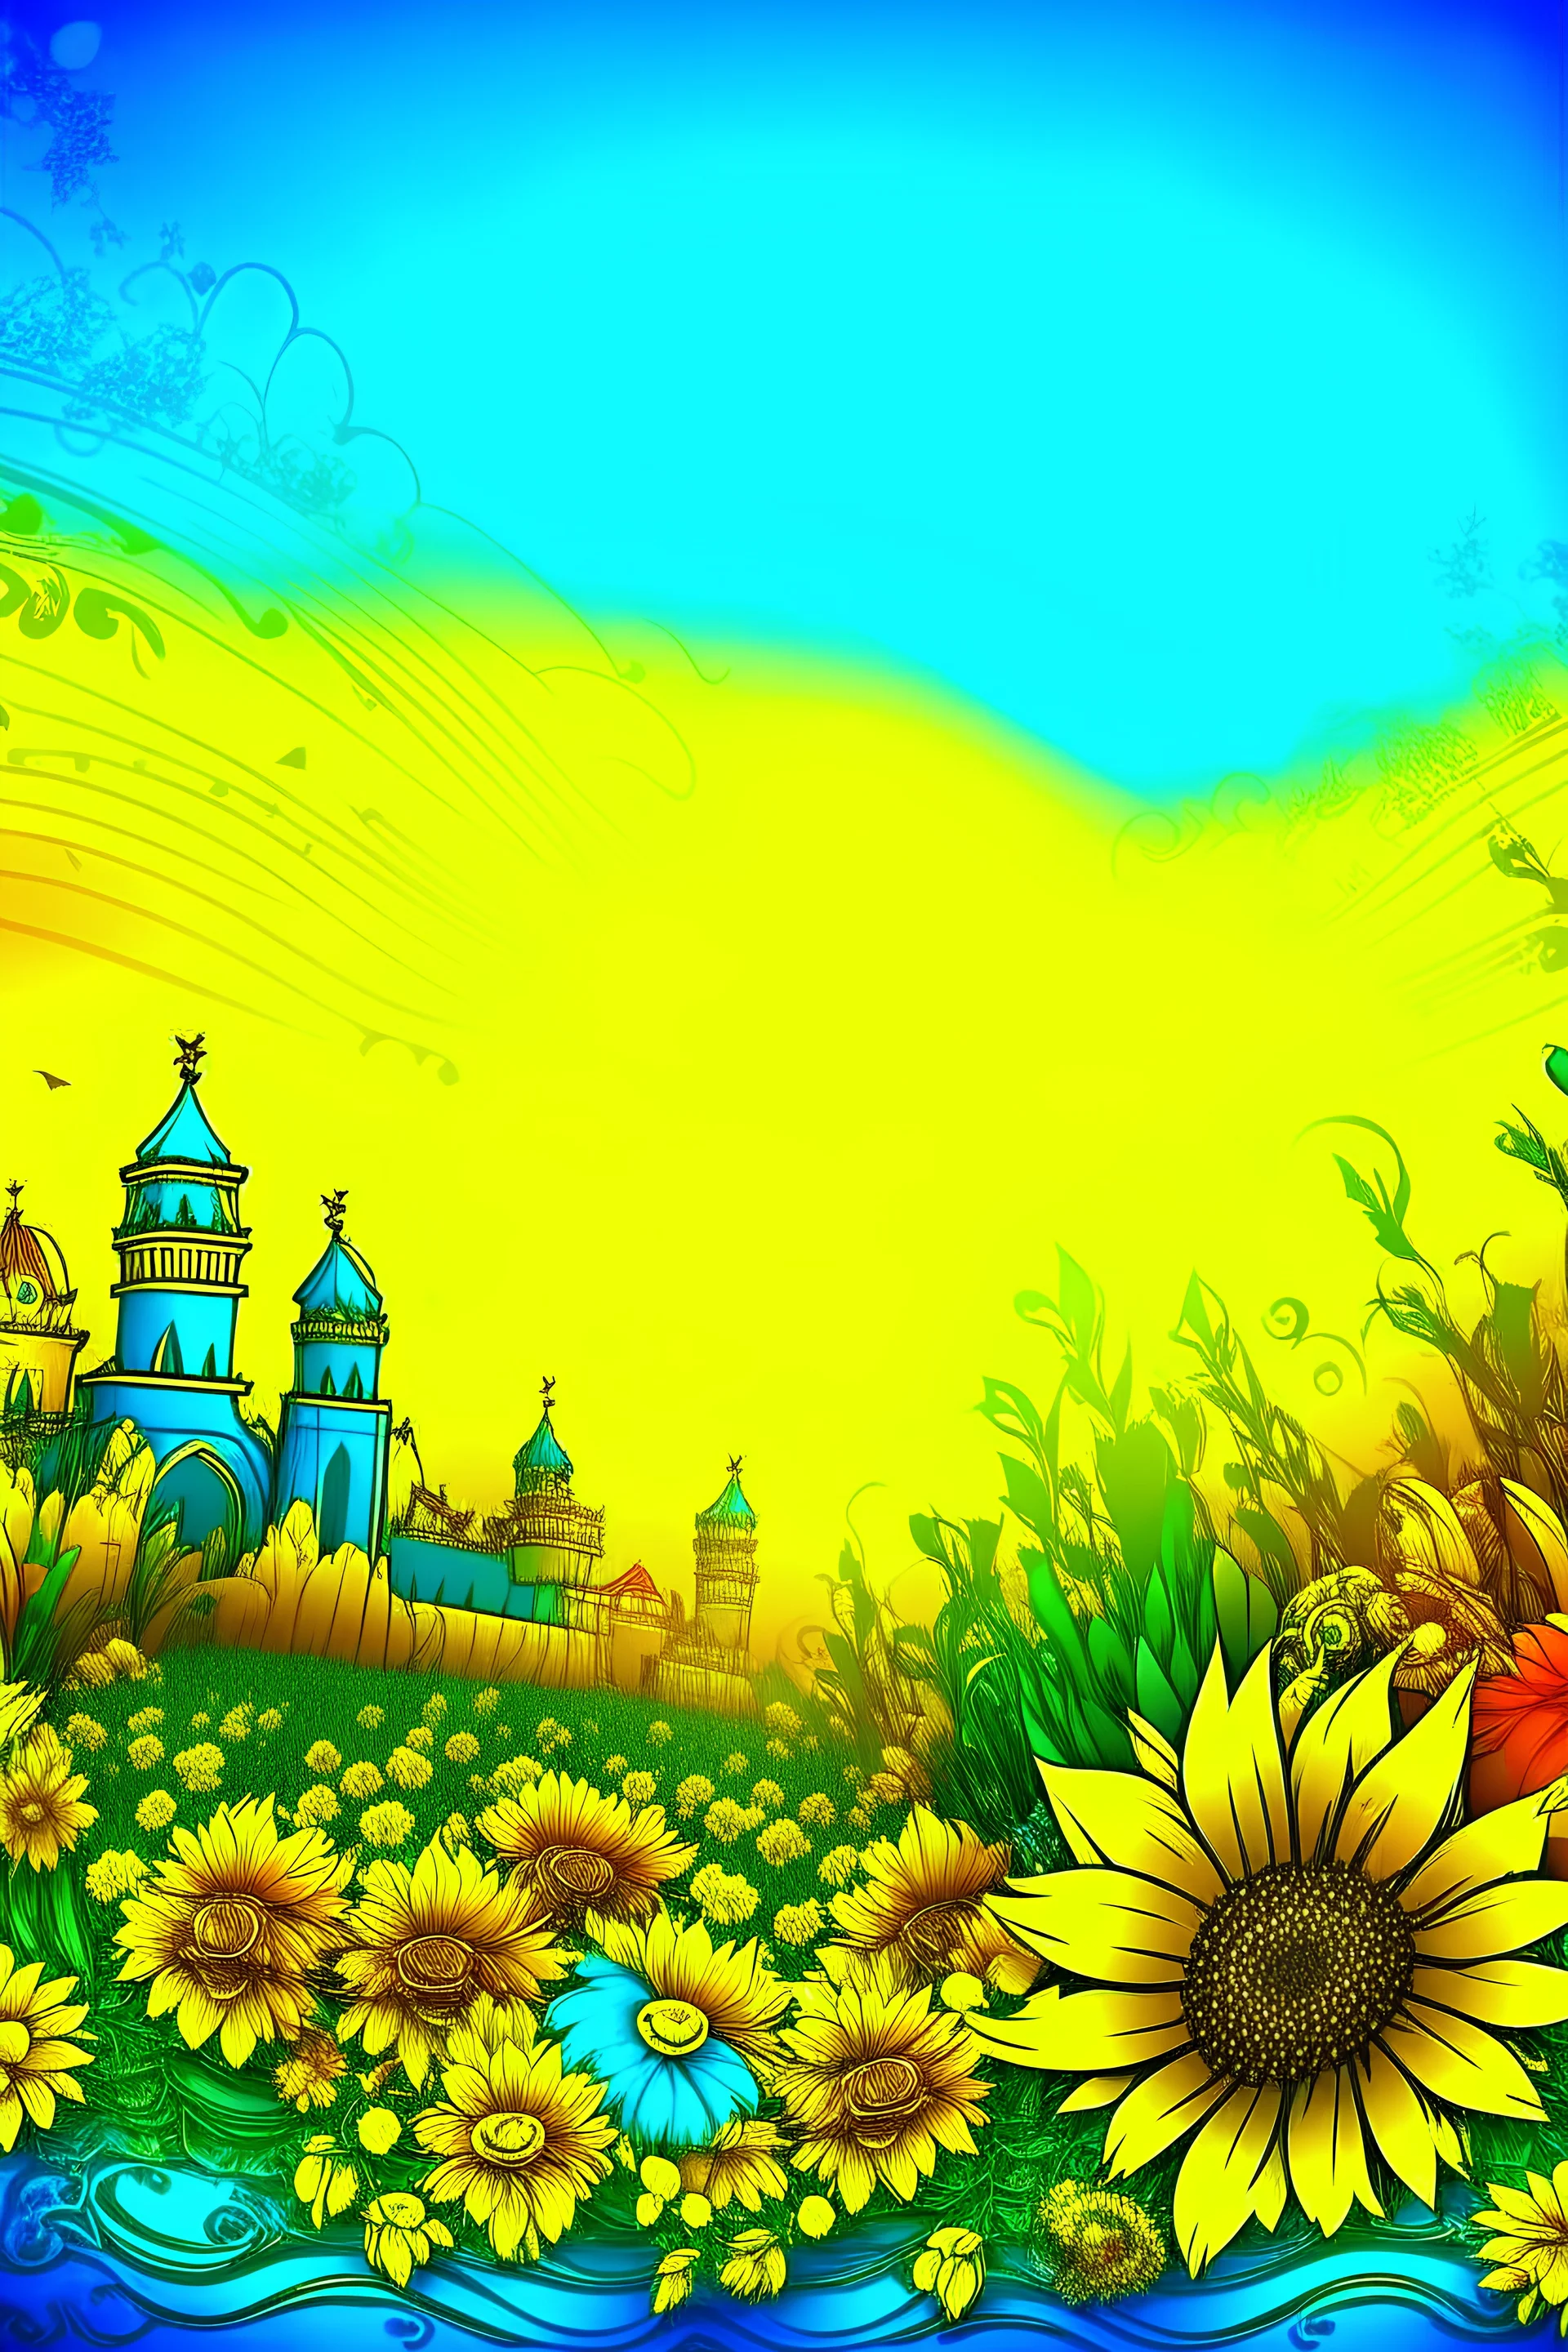 background image with ukrainian theme